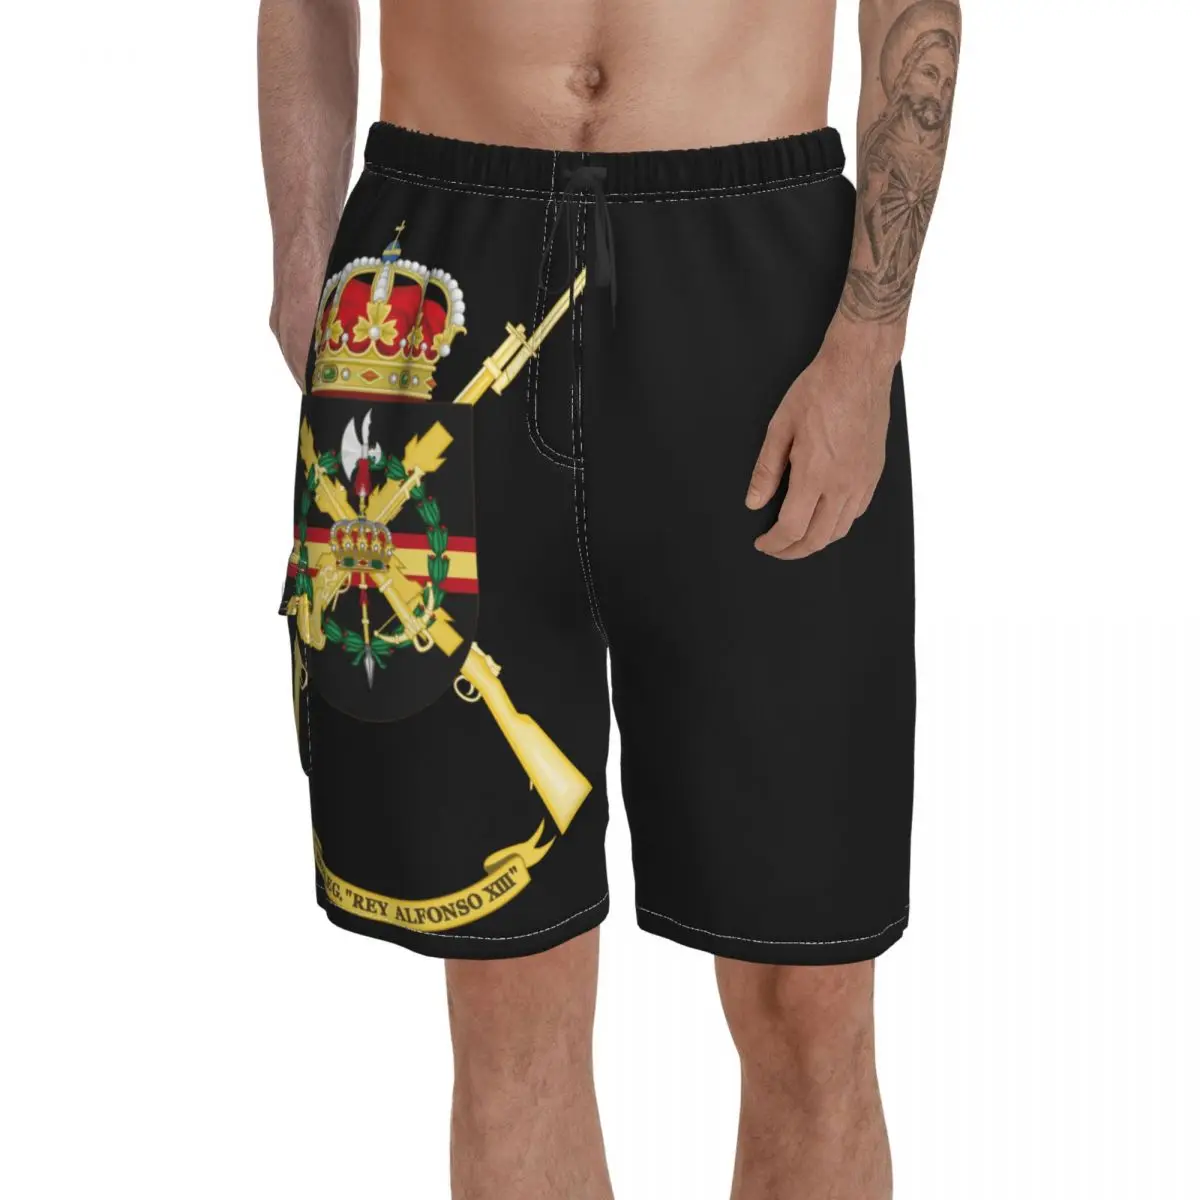 

Пляжные штаны с карманами бывший герб 2-го испанского легиона бригада король Альфонсо пляжные быстросохнущие мужские шорты премиум класса ...